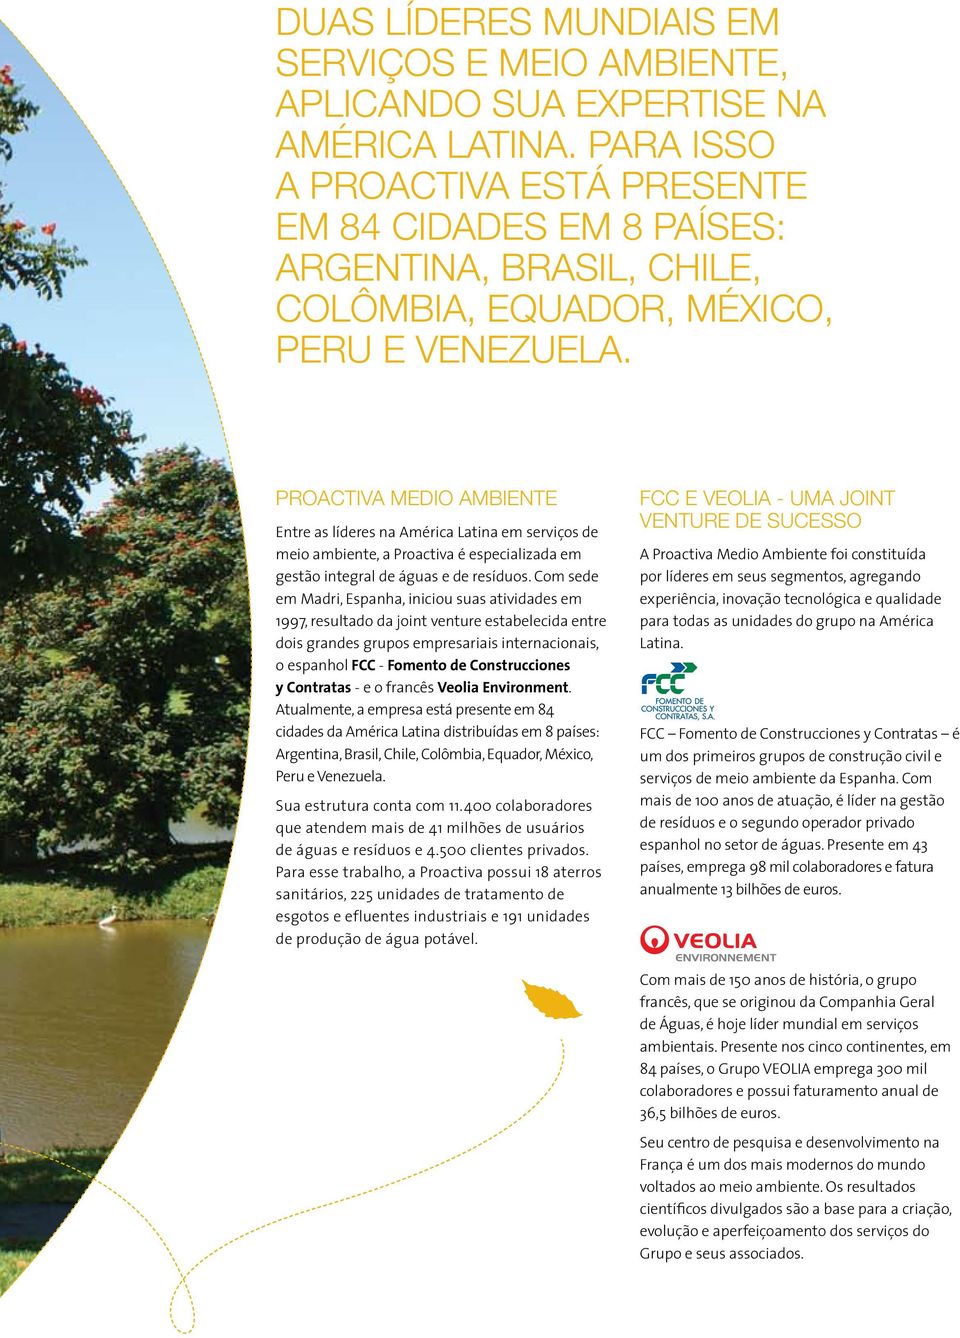 PROACTIVA MEDIO AMBIENTE Entre as líderes na América Latina em serviços de meio ambiente, a Proactiva é especializada em gestão integral de águas e de resíduos.